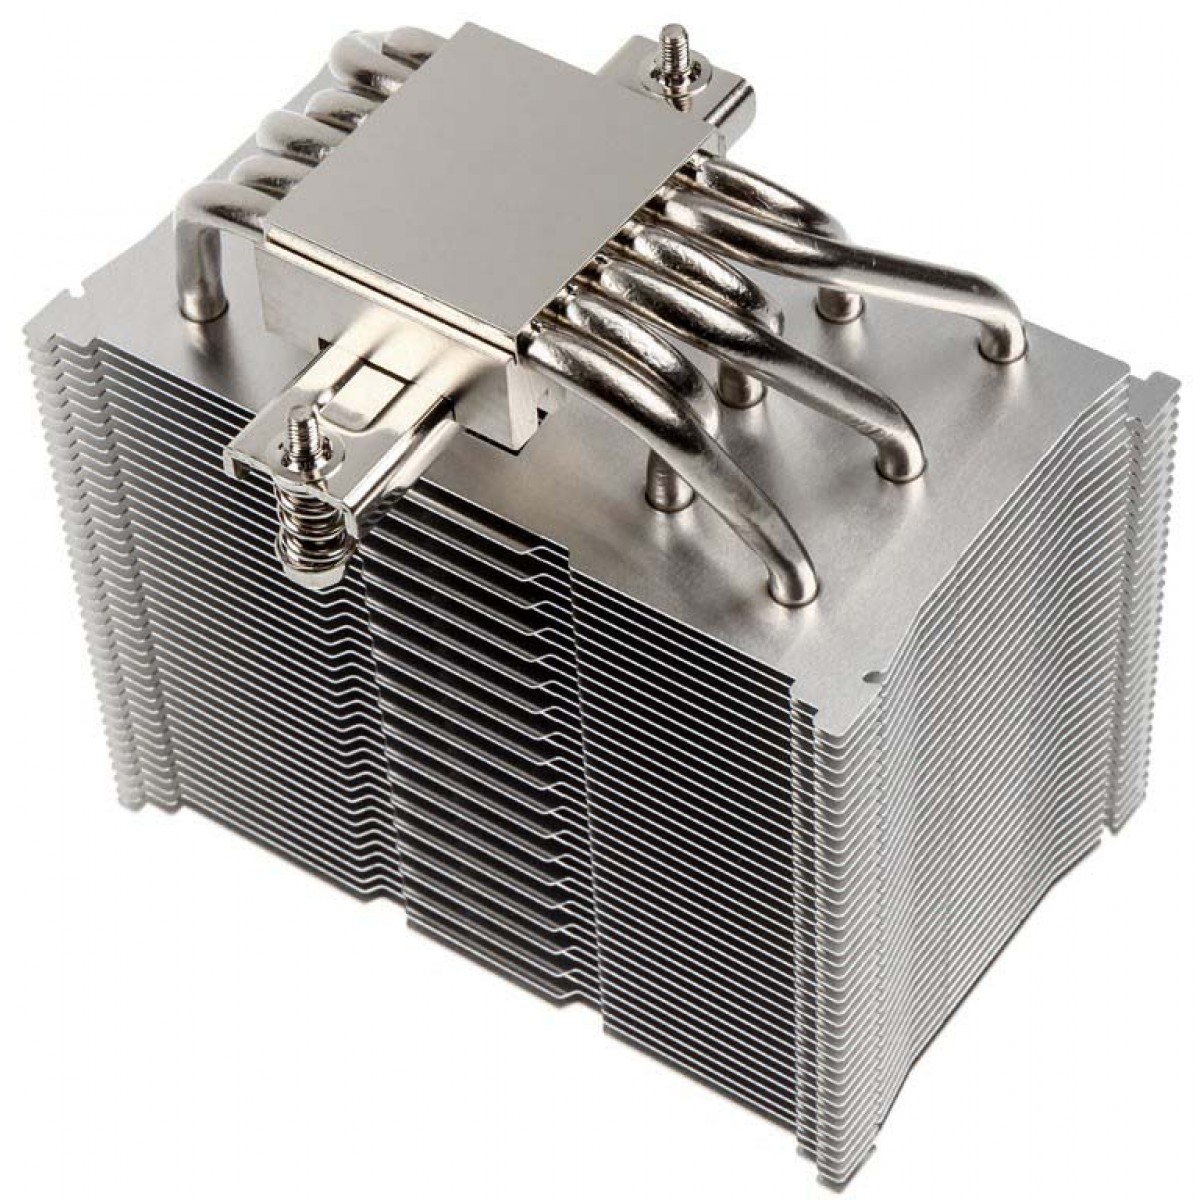 Cooler para Processador Scythe Mugen 5 Rev.B 120mm, Intel-AMD, SCMG-5100